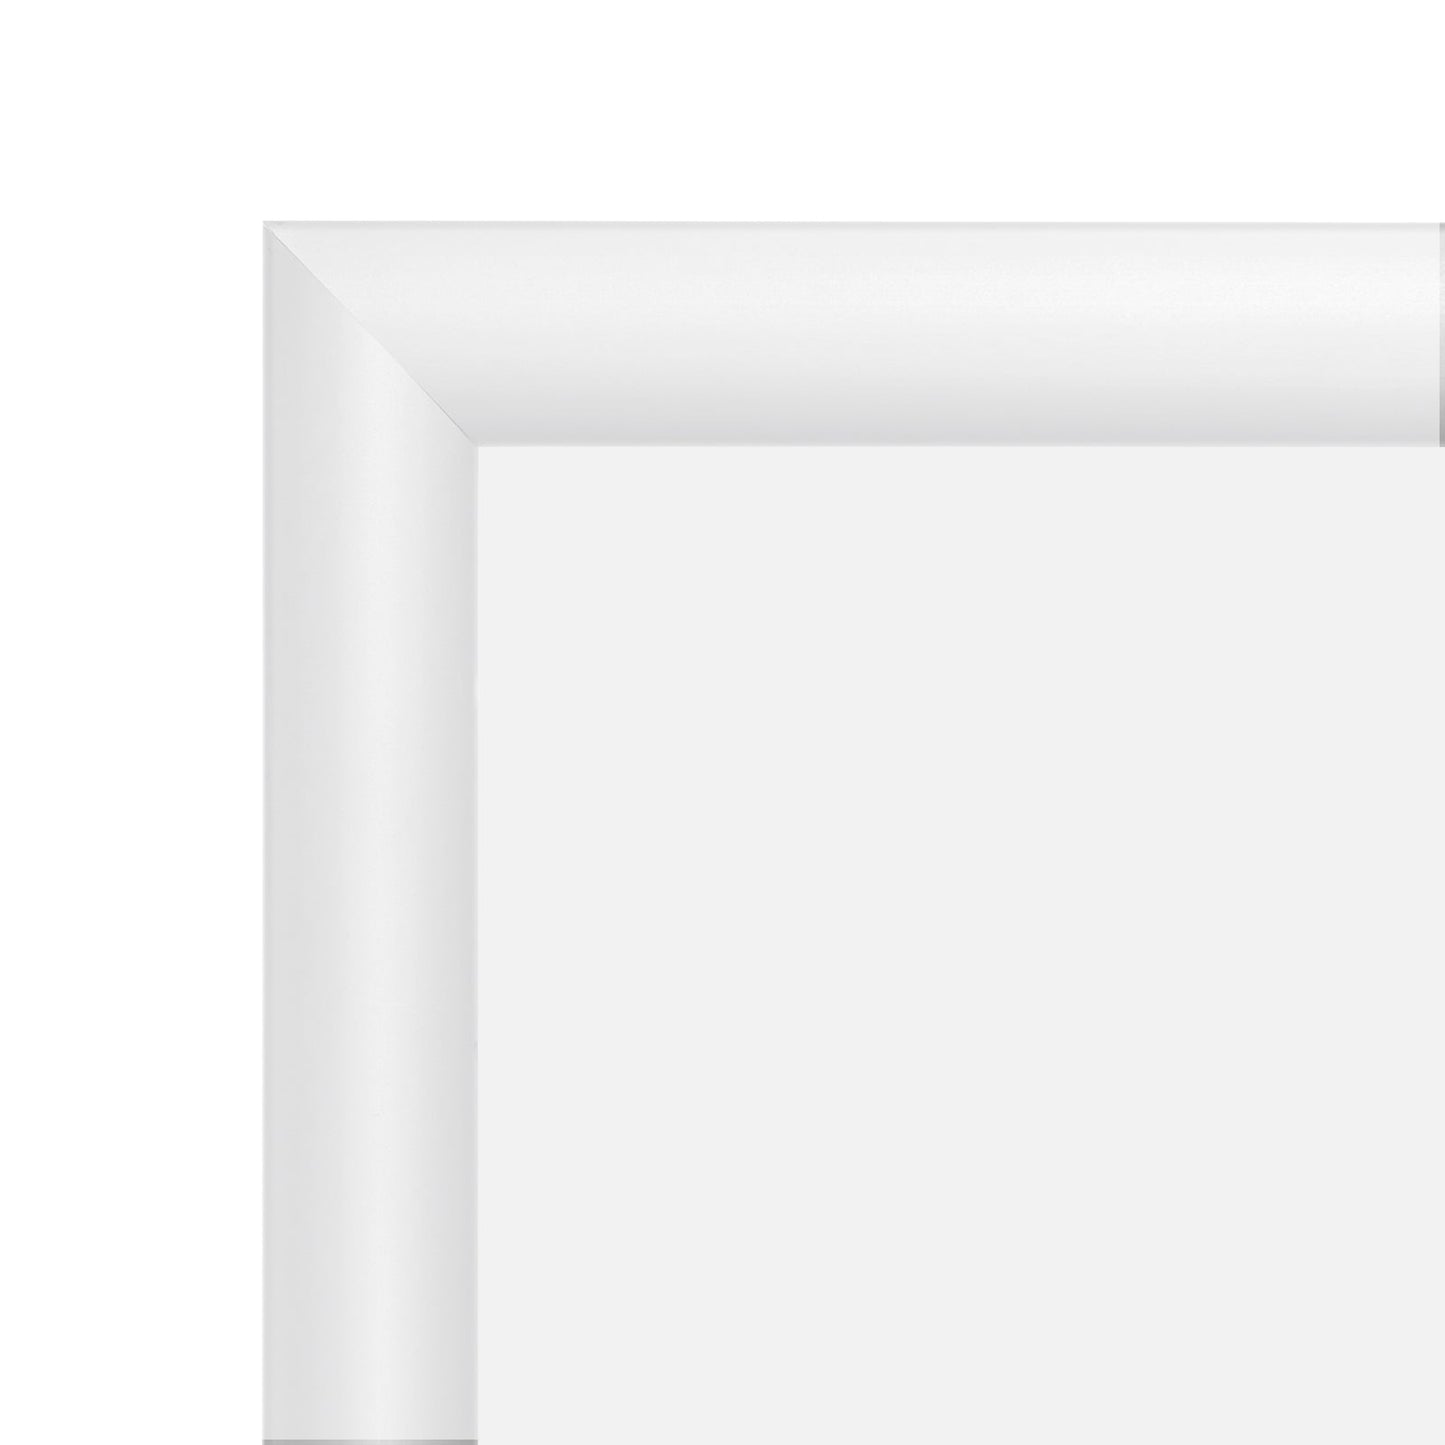 27x41 White SnapeZo® Snap Frame - 1.2" Profile